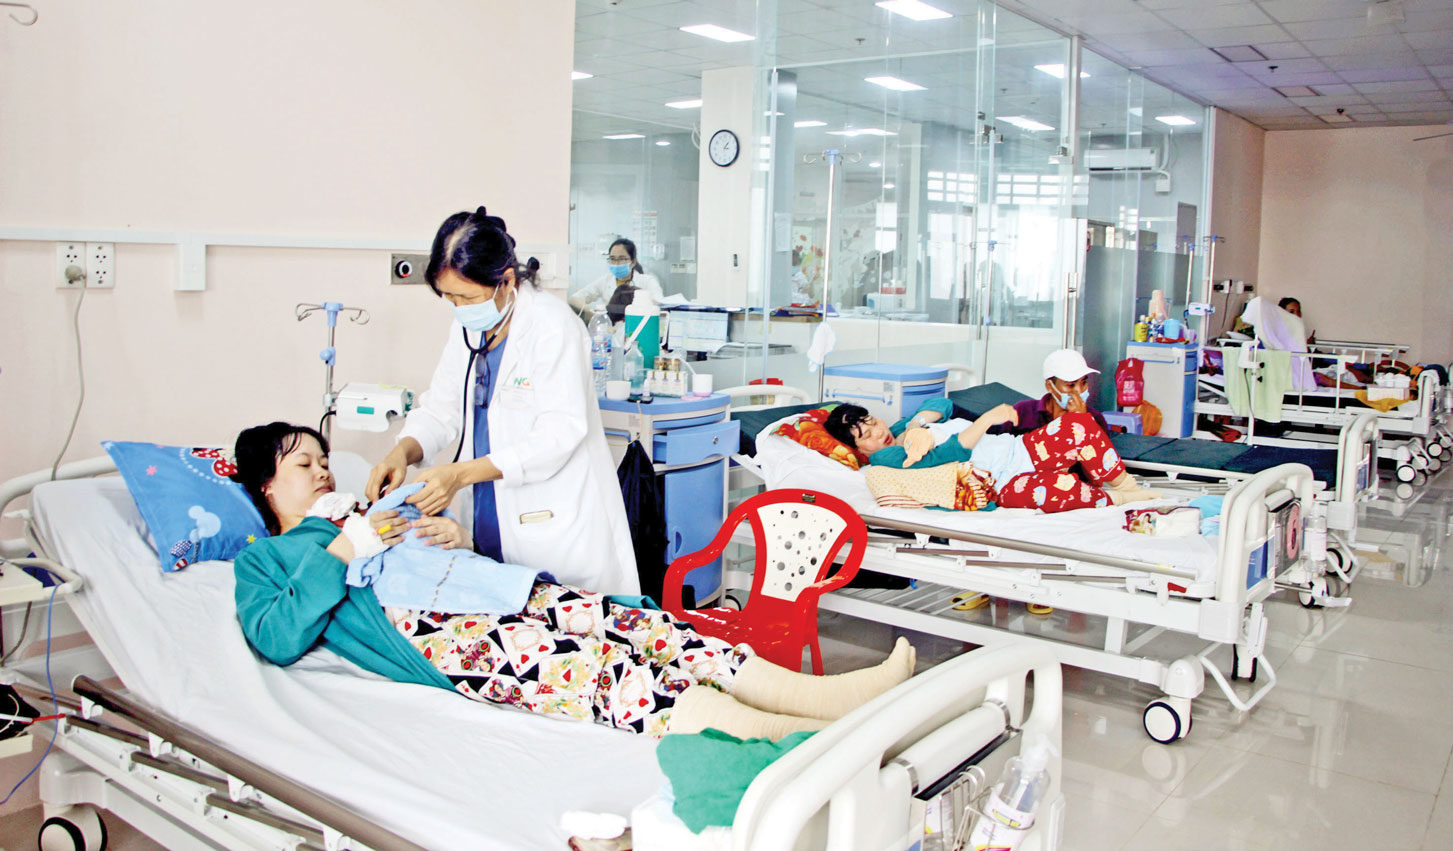 Bệnh viện Sản Nhi có quy mô 500 giường bệnh, trong đó 70% phục vụ bệnh nhân sử dụng bảo hiểm y tế (Trong ảnh: Phòng bệnh phục vụ bệnh nhân bảo hiểm y tế tại Bệnh viện Sản Nhi)